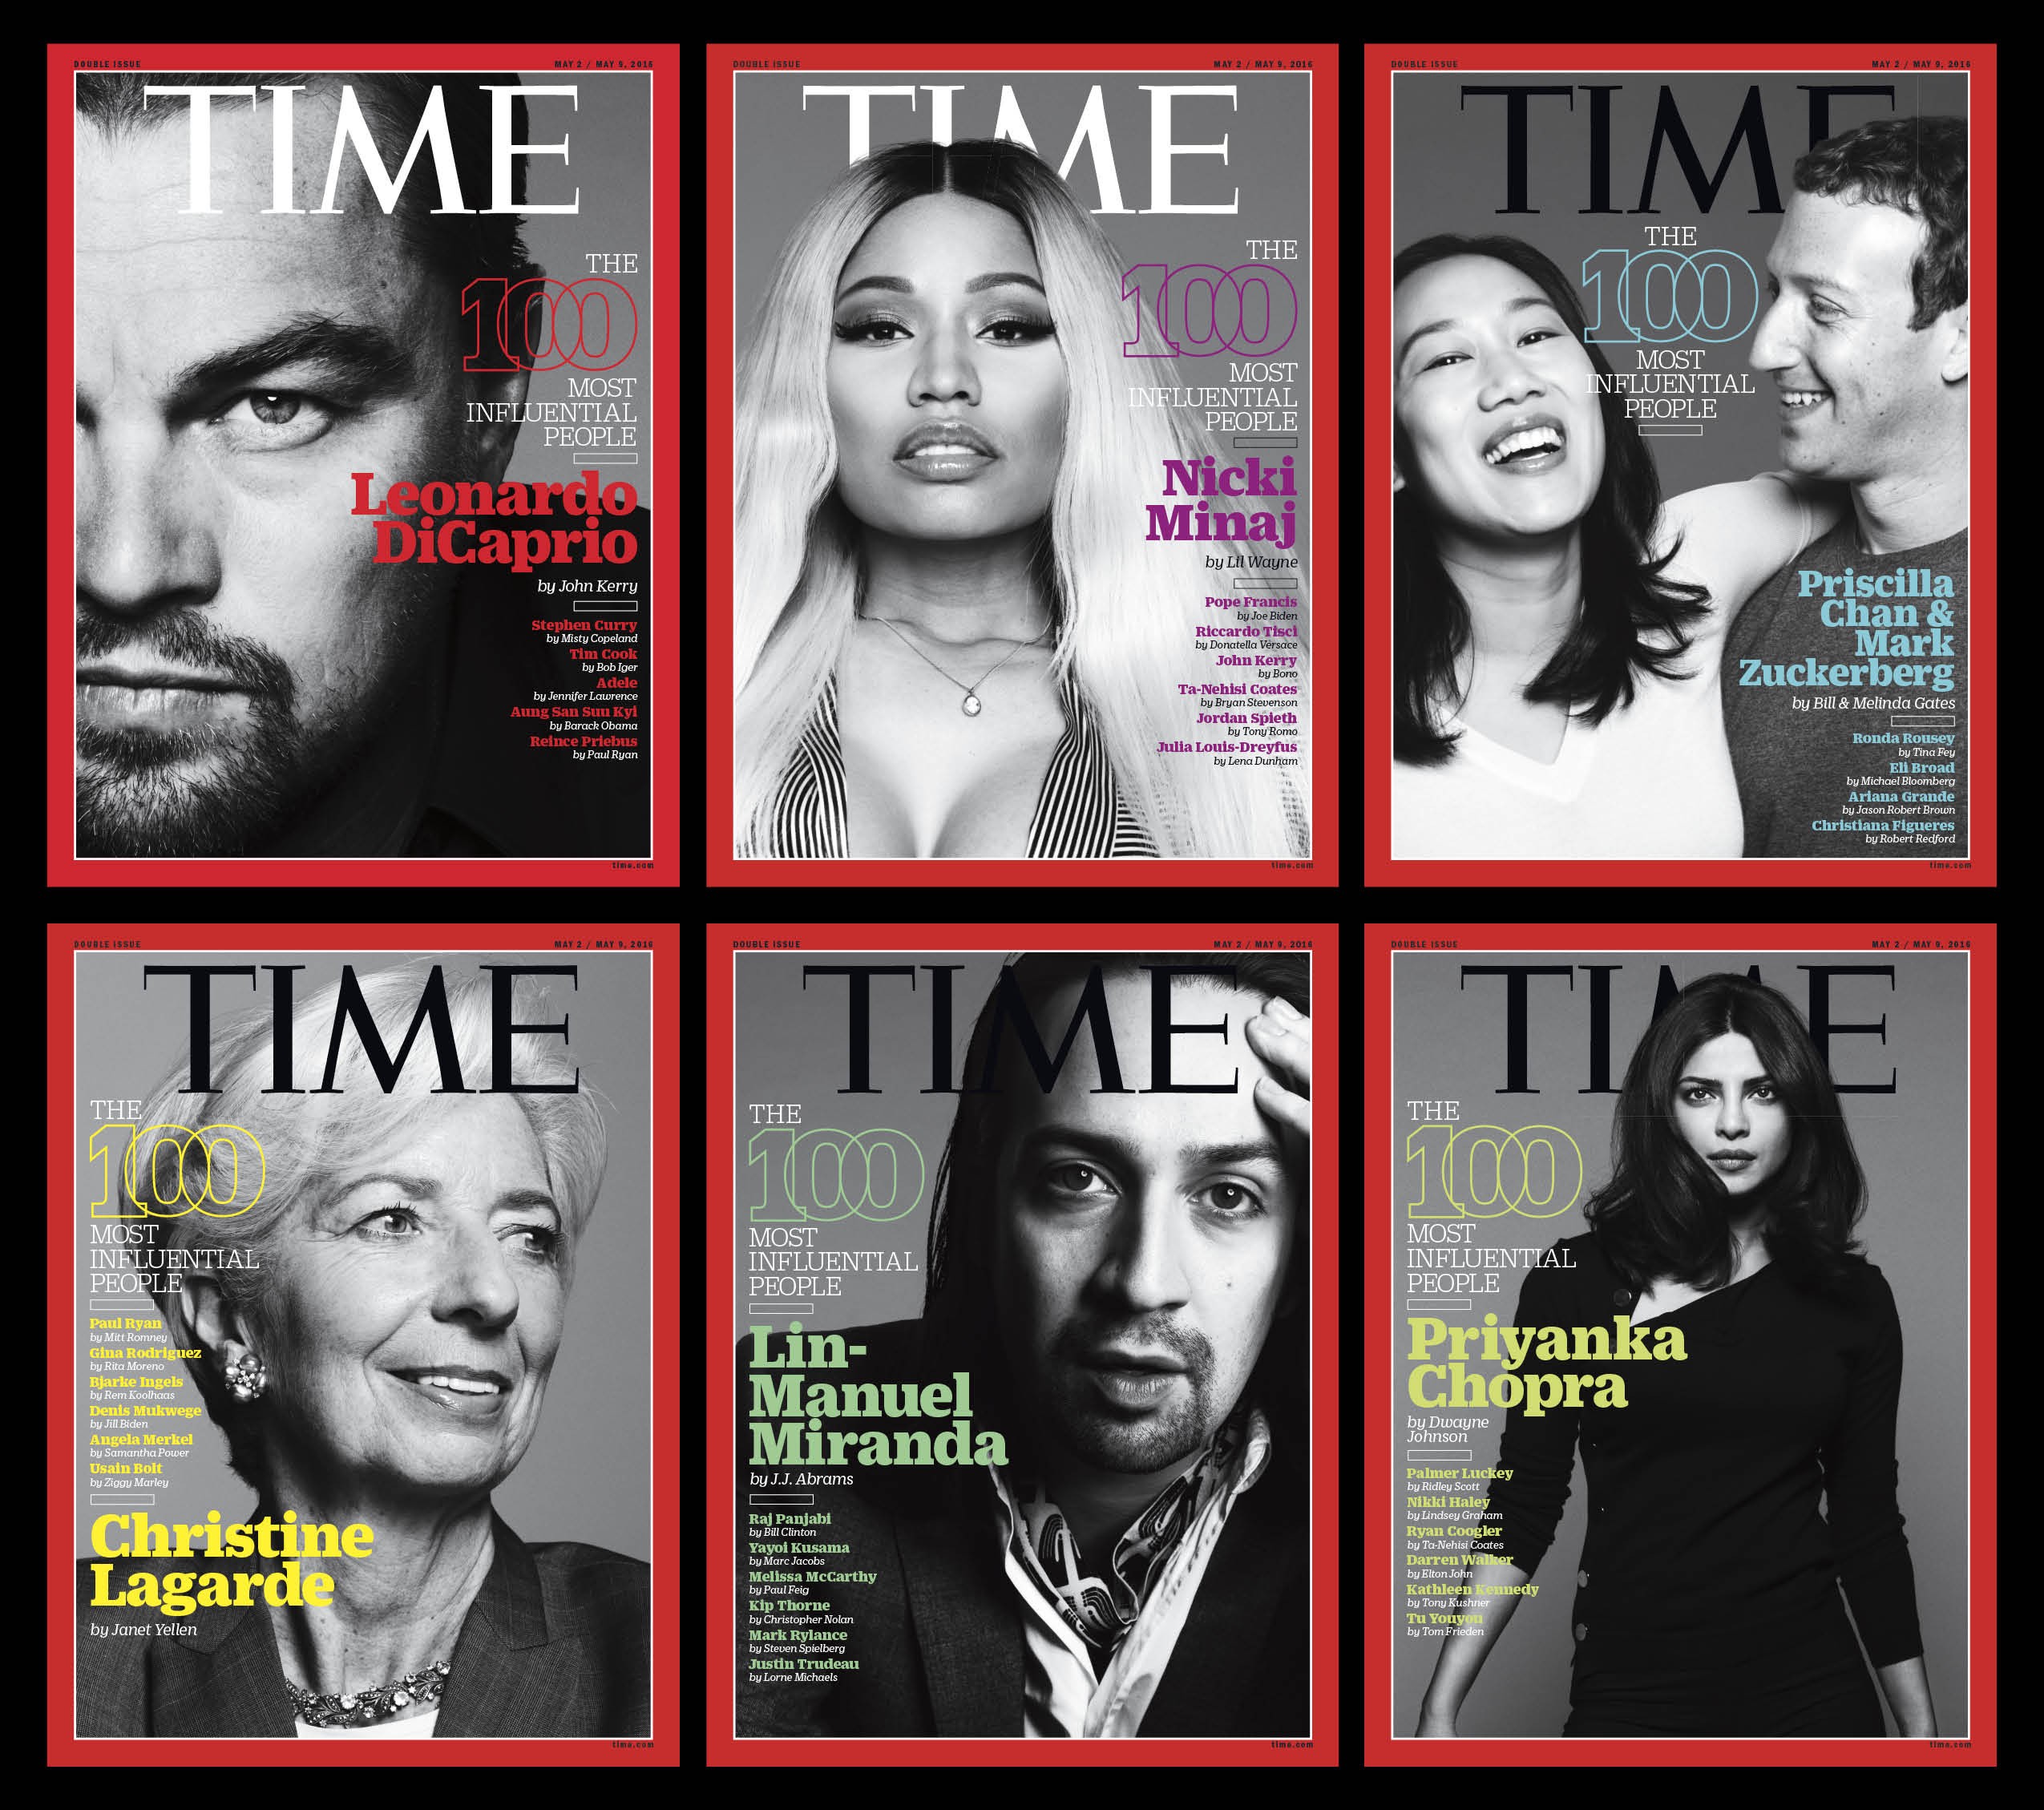 Журнал Time перенес публикацию списка Time 100 и одноименную премию из-за коронавируса